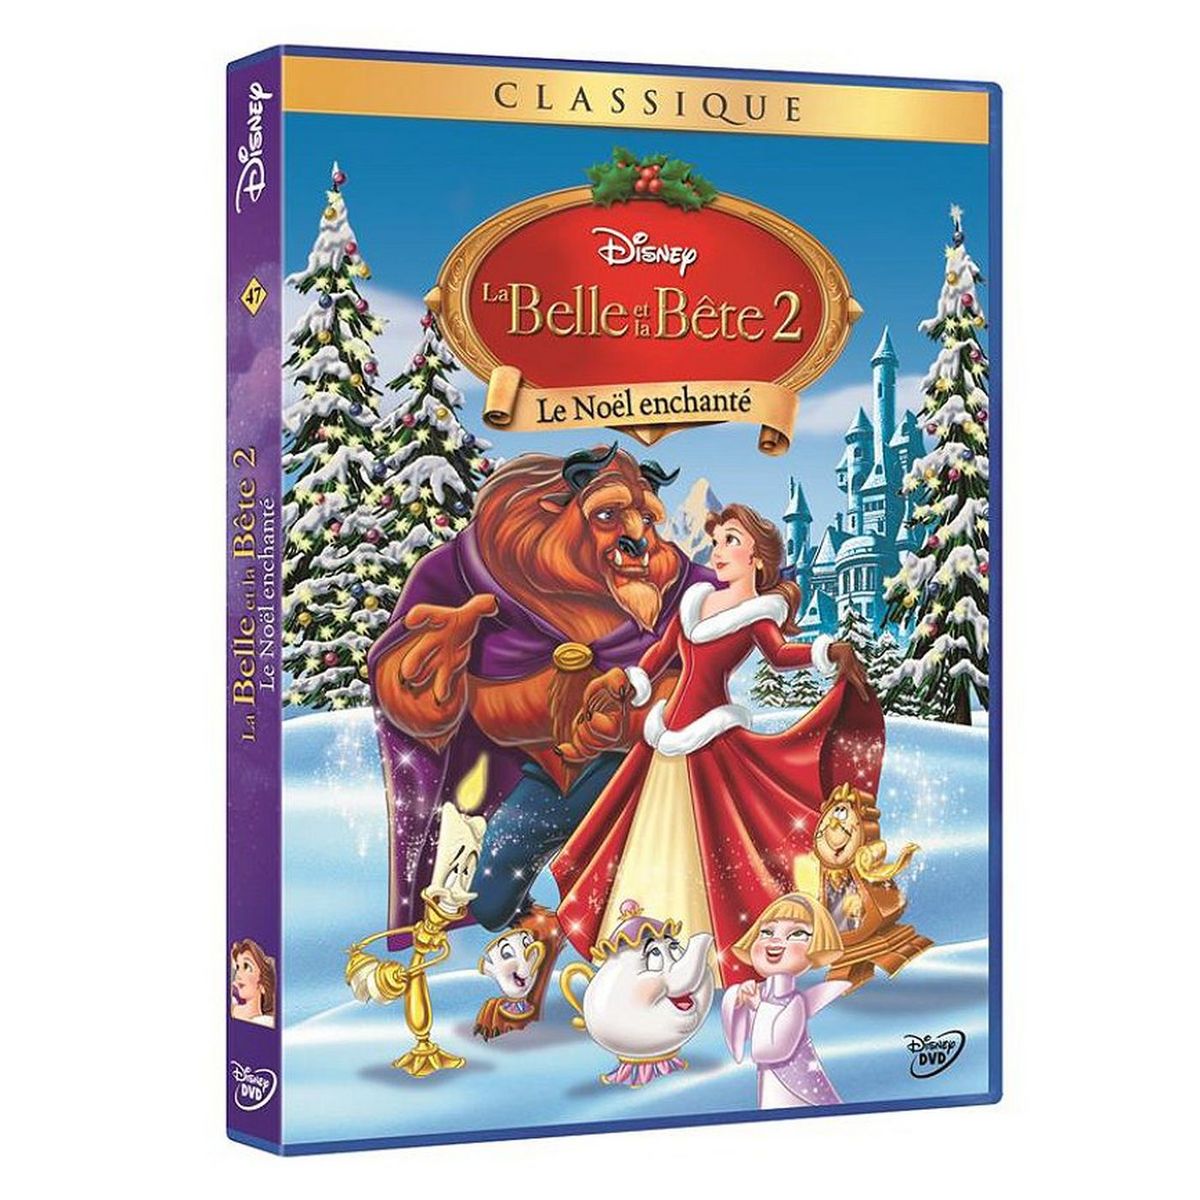 La Belle et la bête 2 : Le Noël enchanté DVD